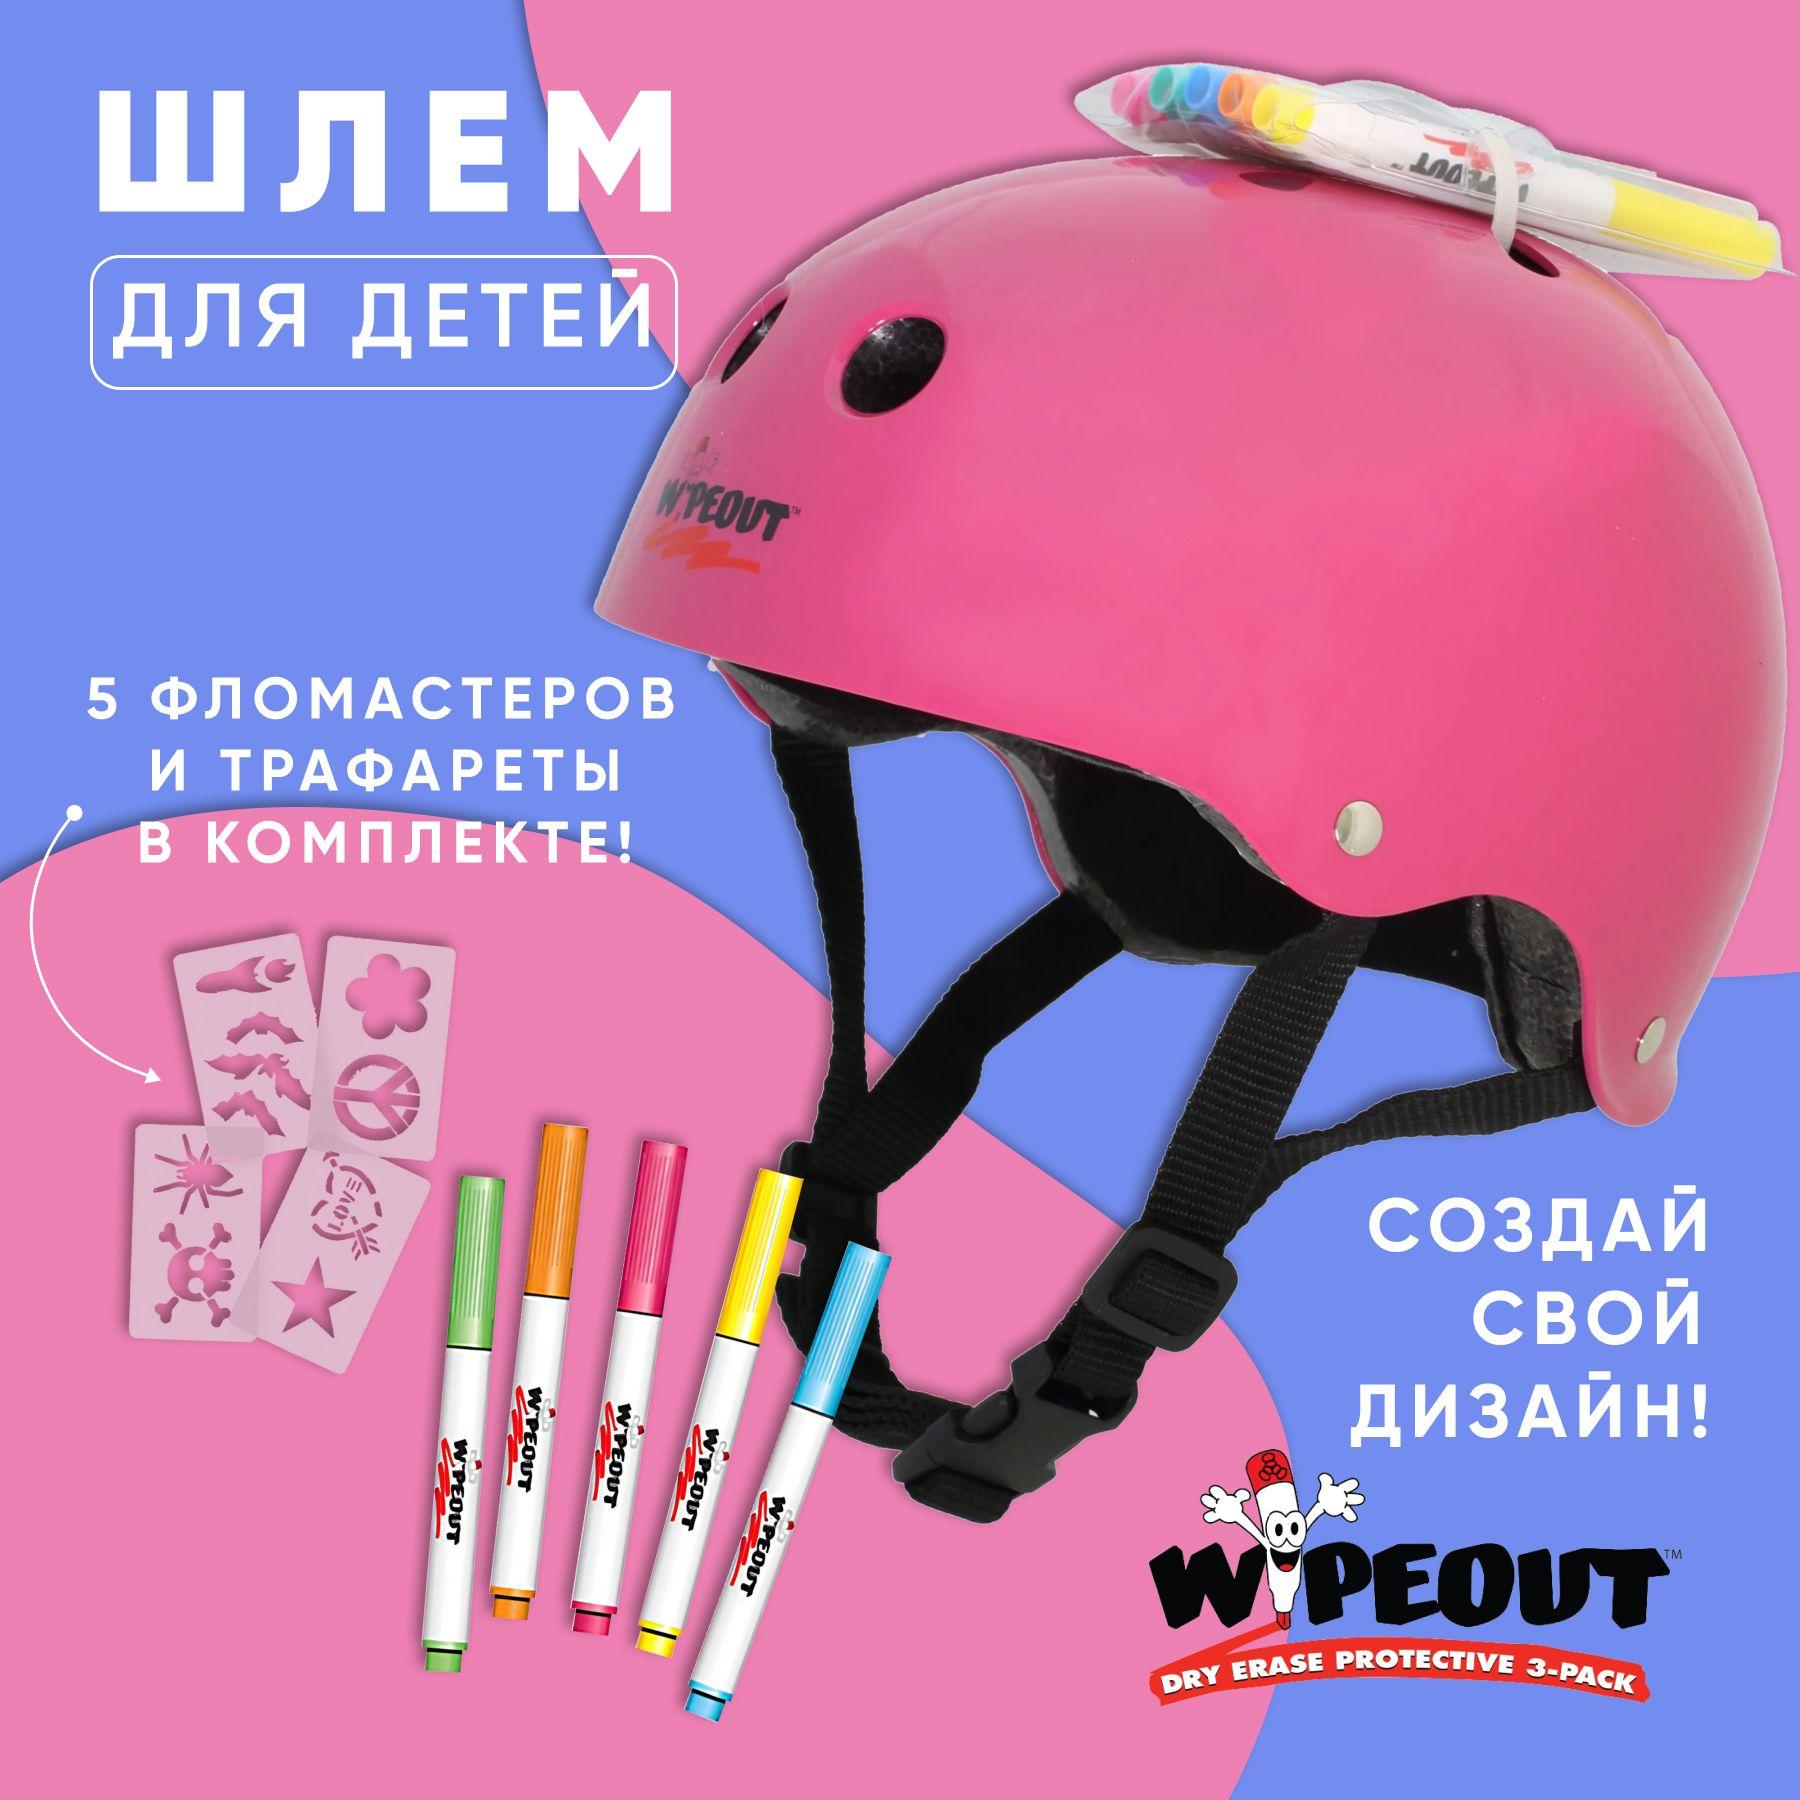 Шлем для детей и подростков Wipeout Pink, с фломастерами - розовый. Размер M (5+), обхват головы 49-52 см., для самоката, скейтборда, роликов, велосипеда